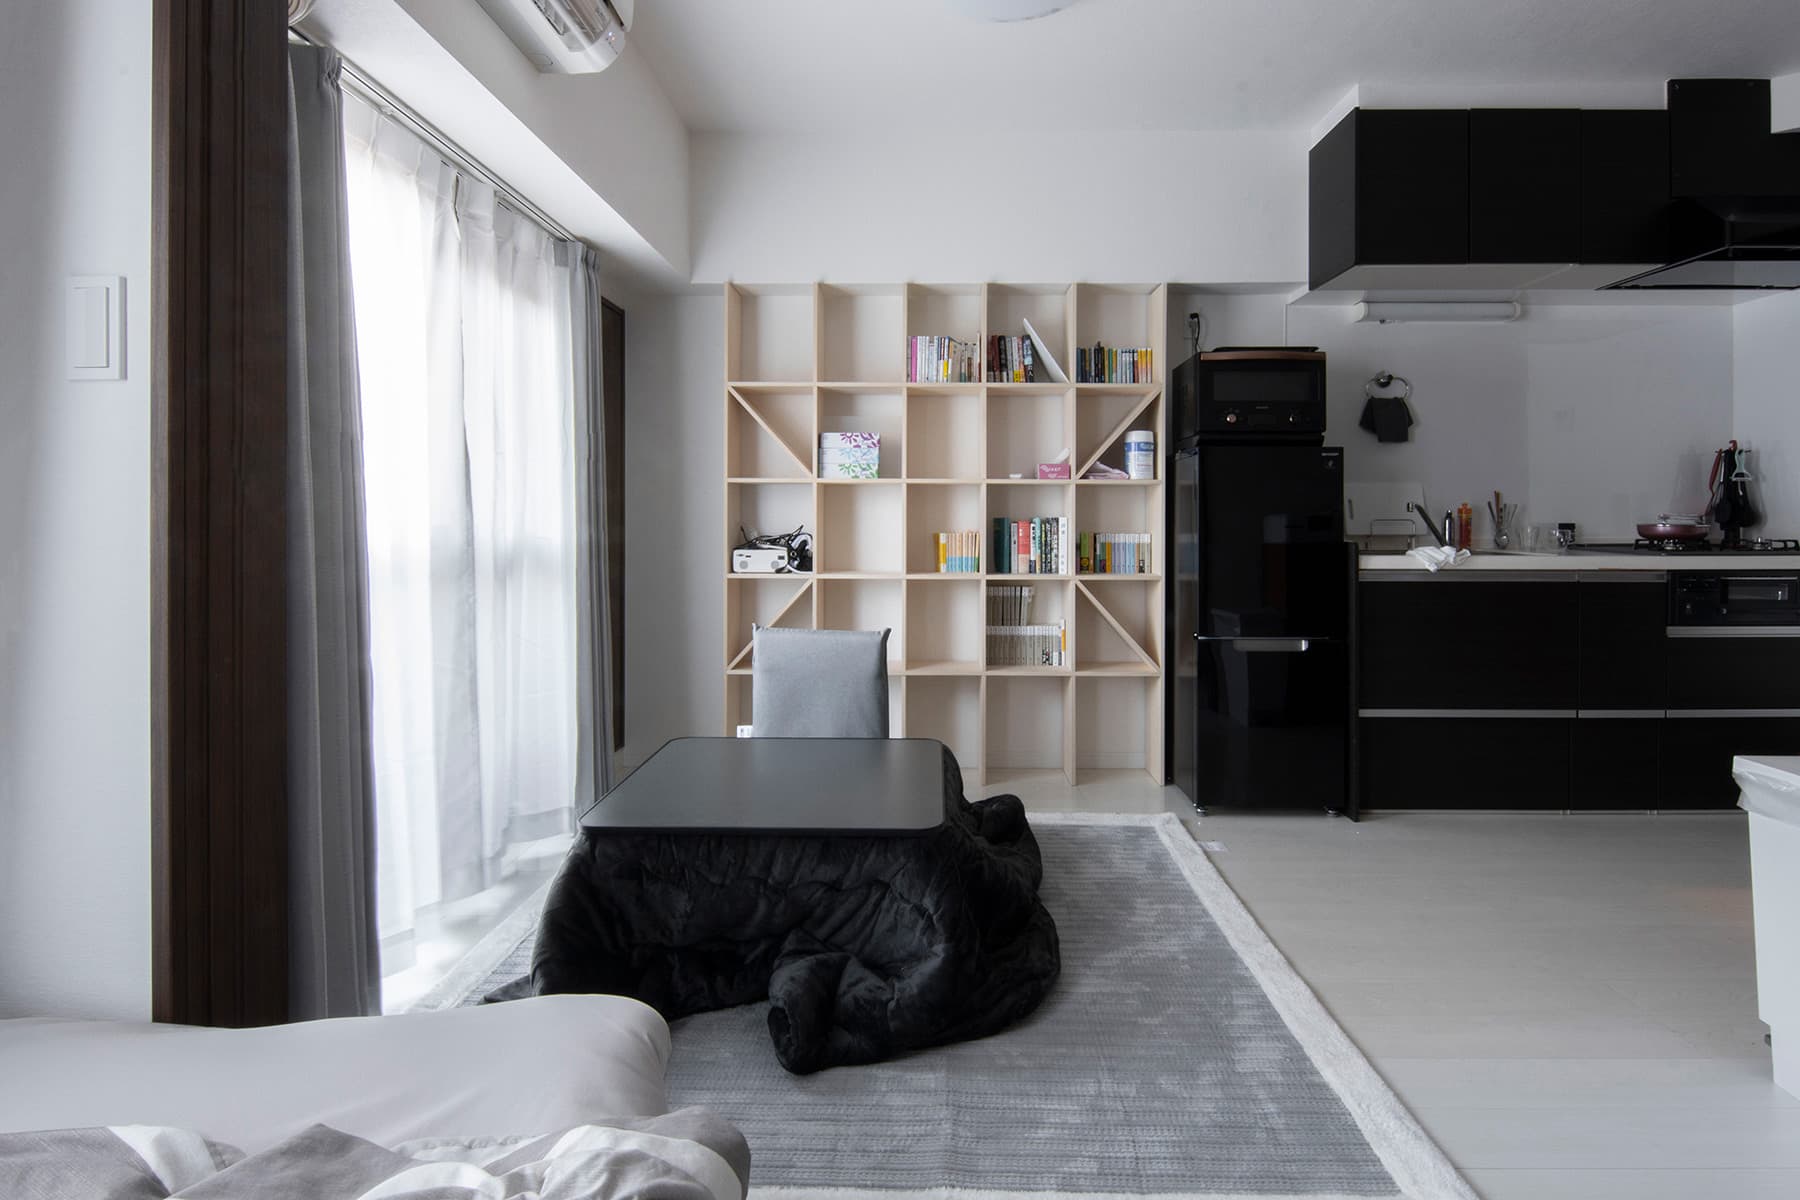 生活空間と学習空間を綺麗に使い分ける | 壁一面の本棚 奥行250 